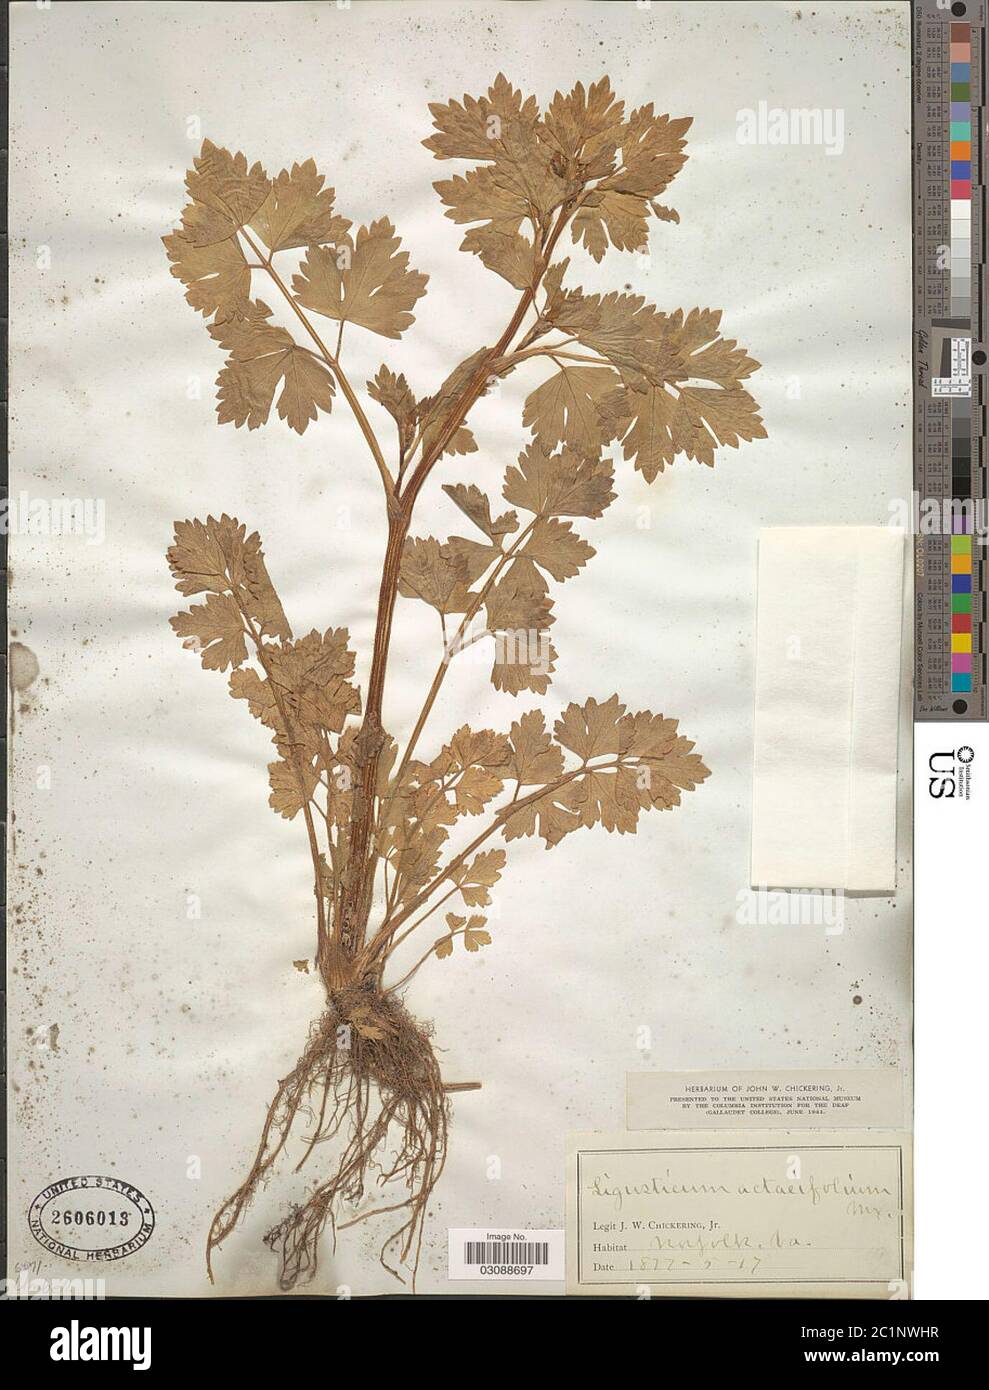 Ligusticum actaeifolium Michx Ligusticum actaeifolium Michx. Stock Photo